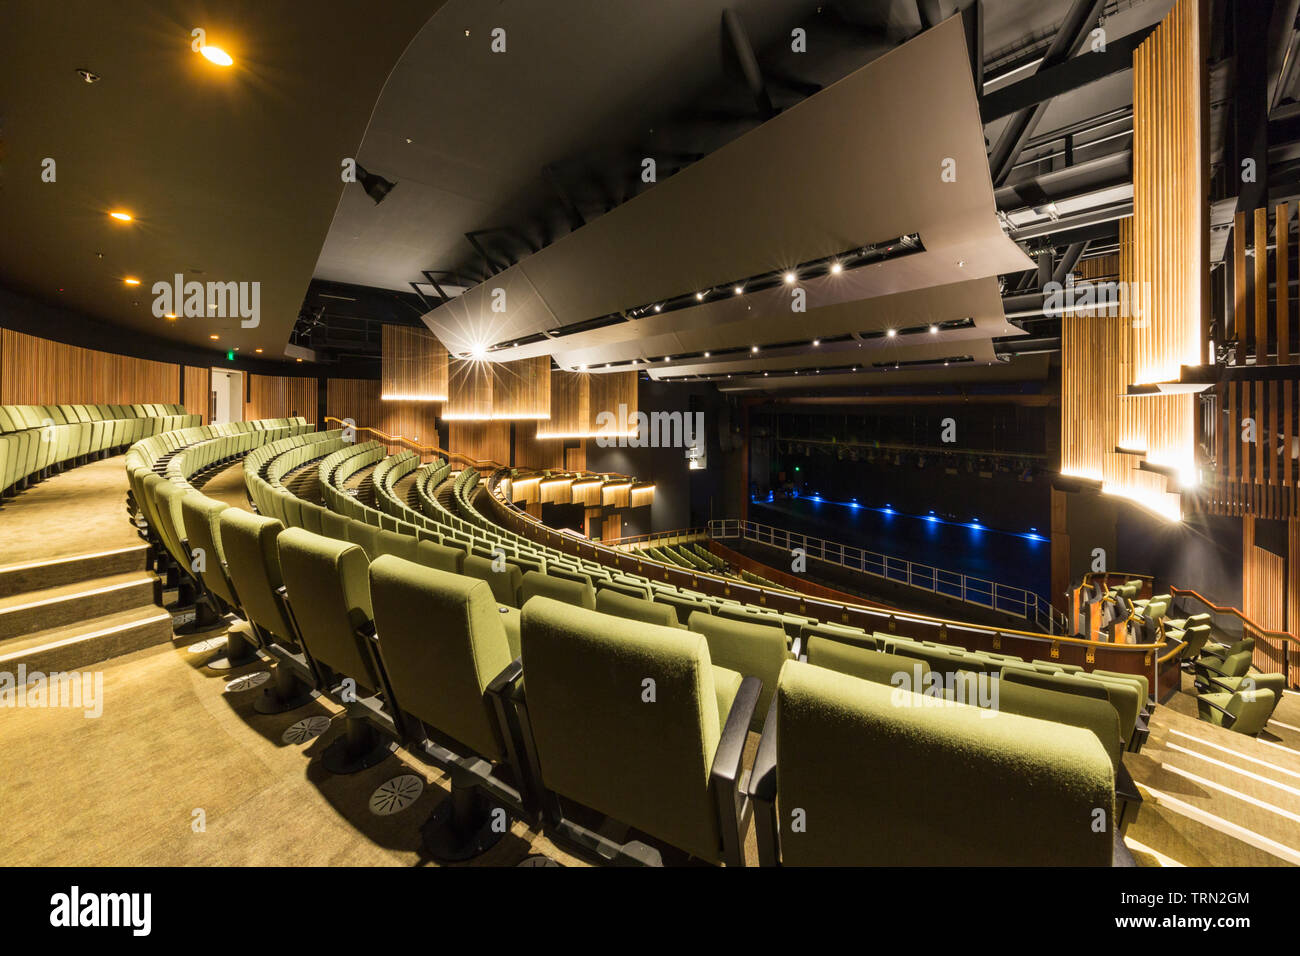 Die 940 Sitze im Theater von Cairns Performing Arts Centre, Cairns, Queensland, Australien Stockfoto